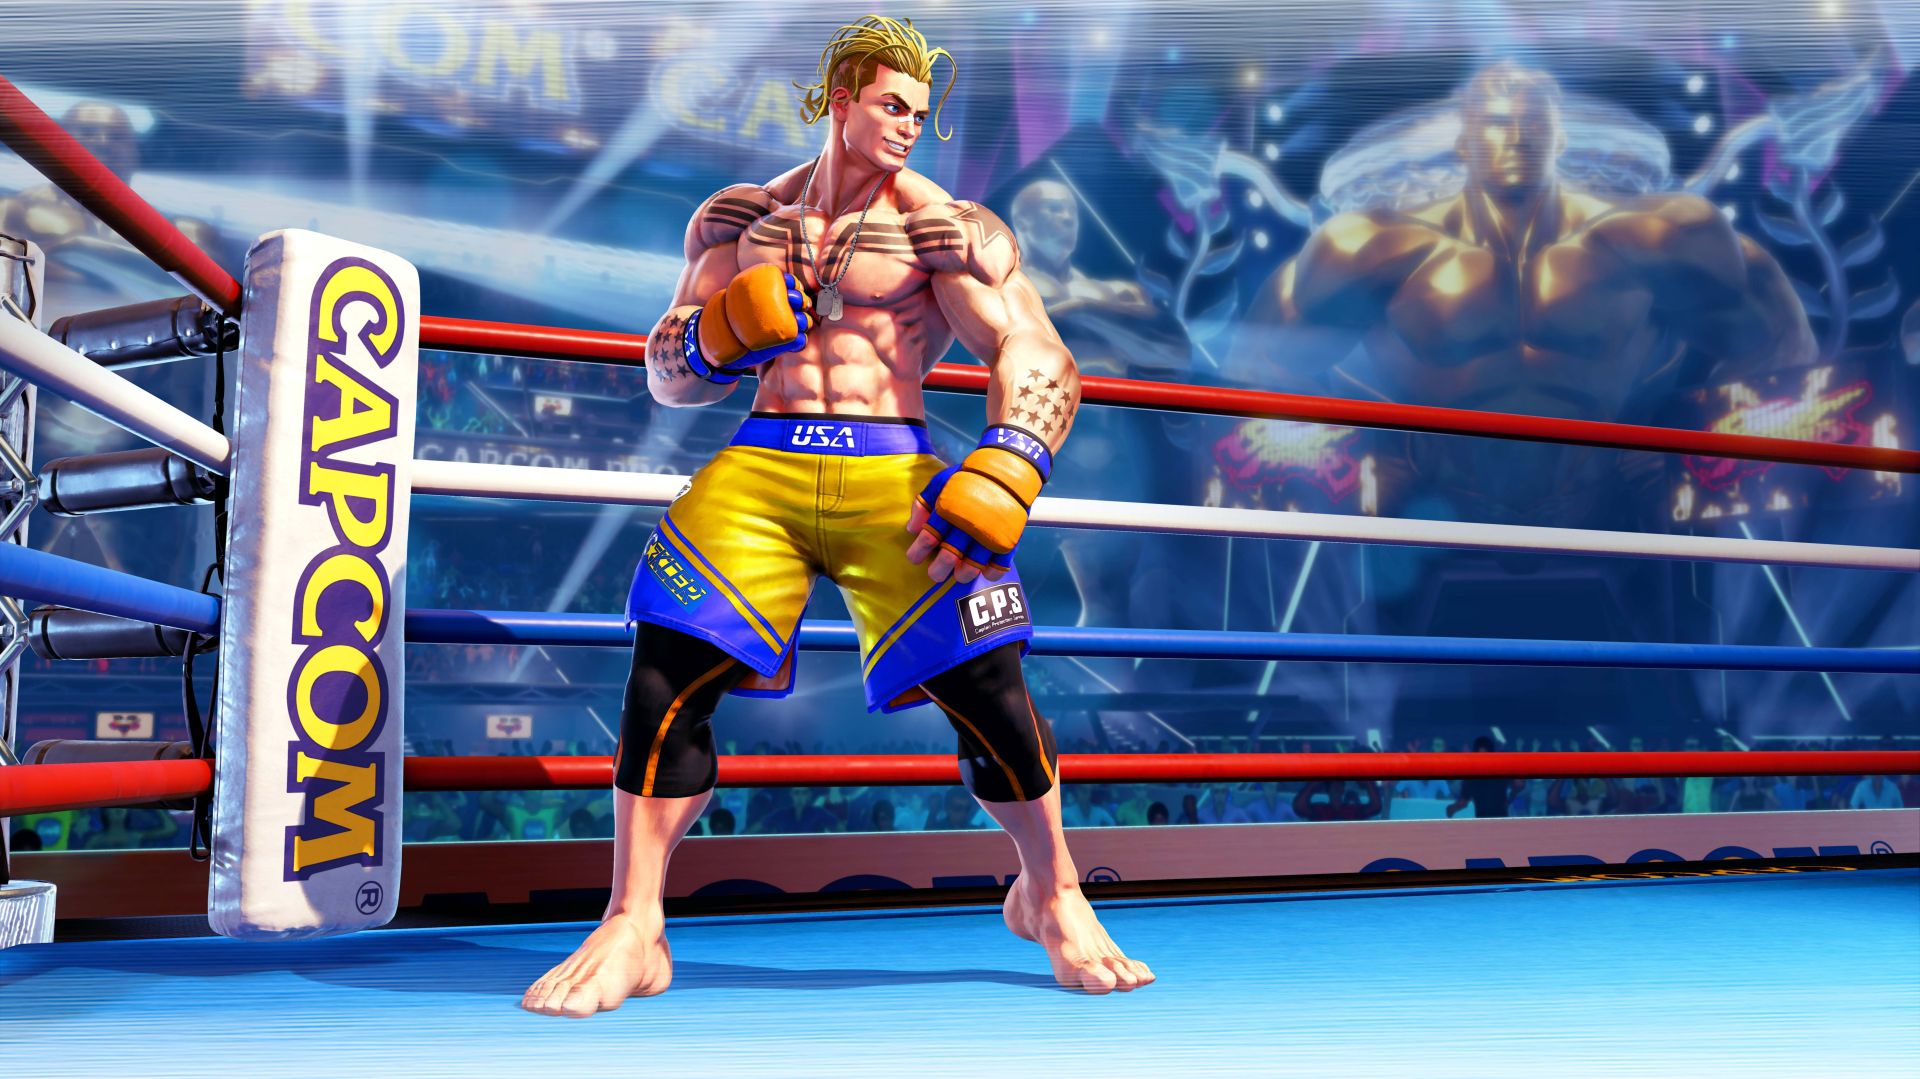 ลือ! อาจจะมีการประกาศเปิดตัว “Street Fighter 6” ในวันที่ 21 กุมภาพันธ์นี้